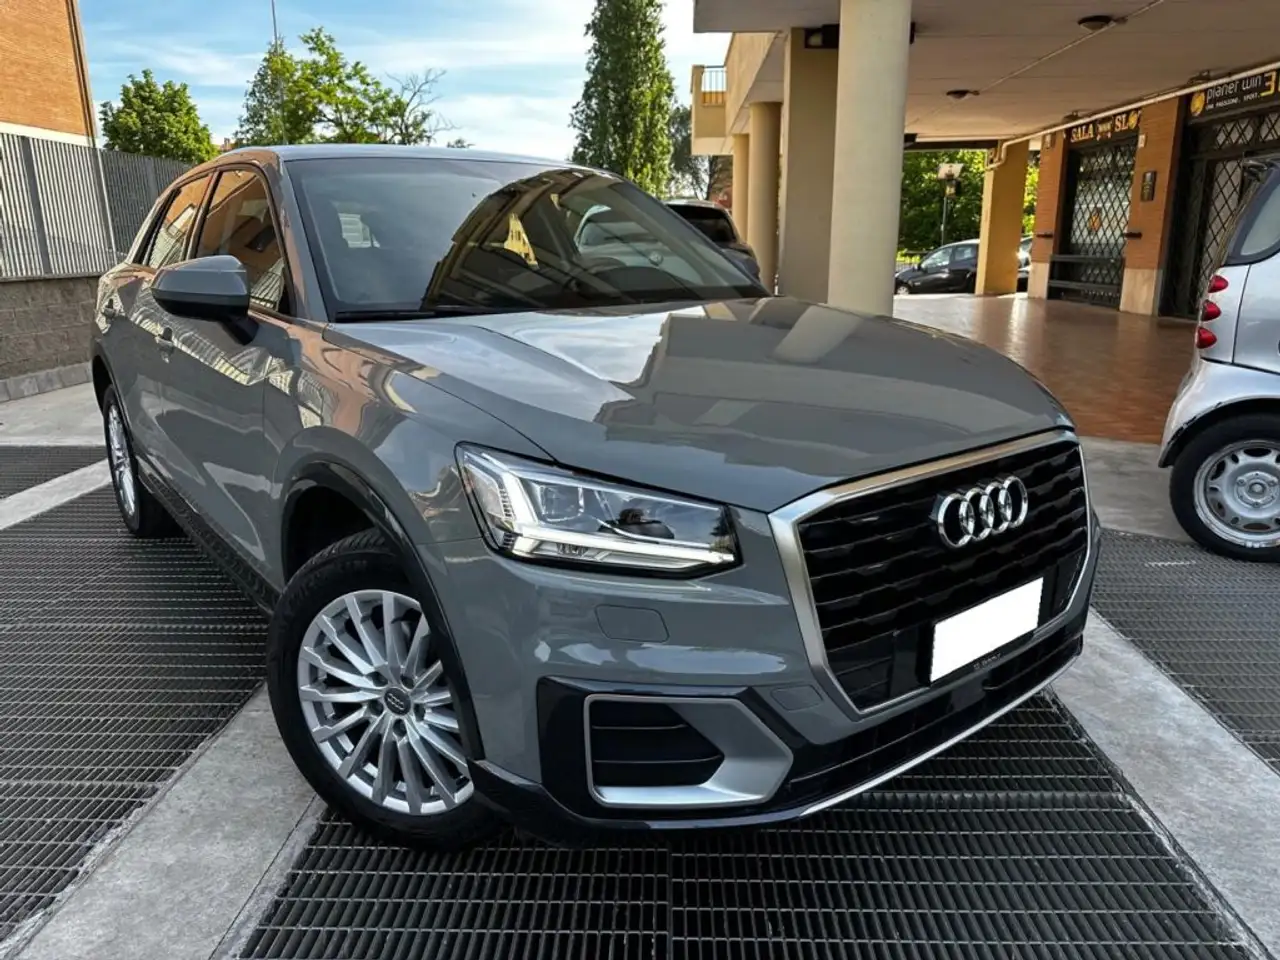 Audi Q2 SUV/4x4/Pick-up in Grijs tweedehands in Roma - Rm voor € 26.300,-